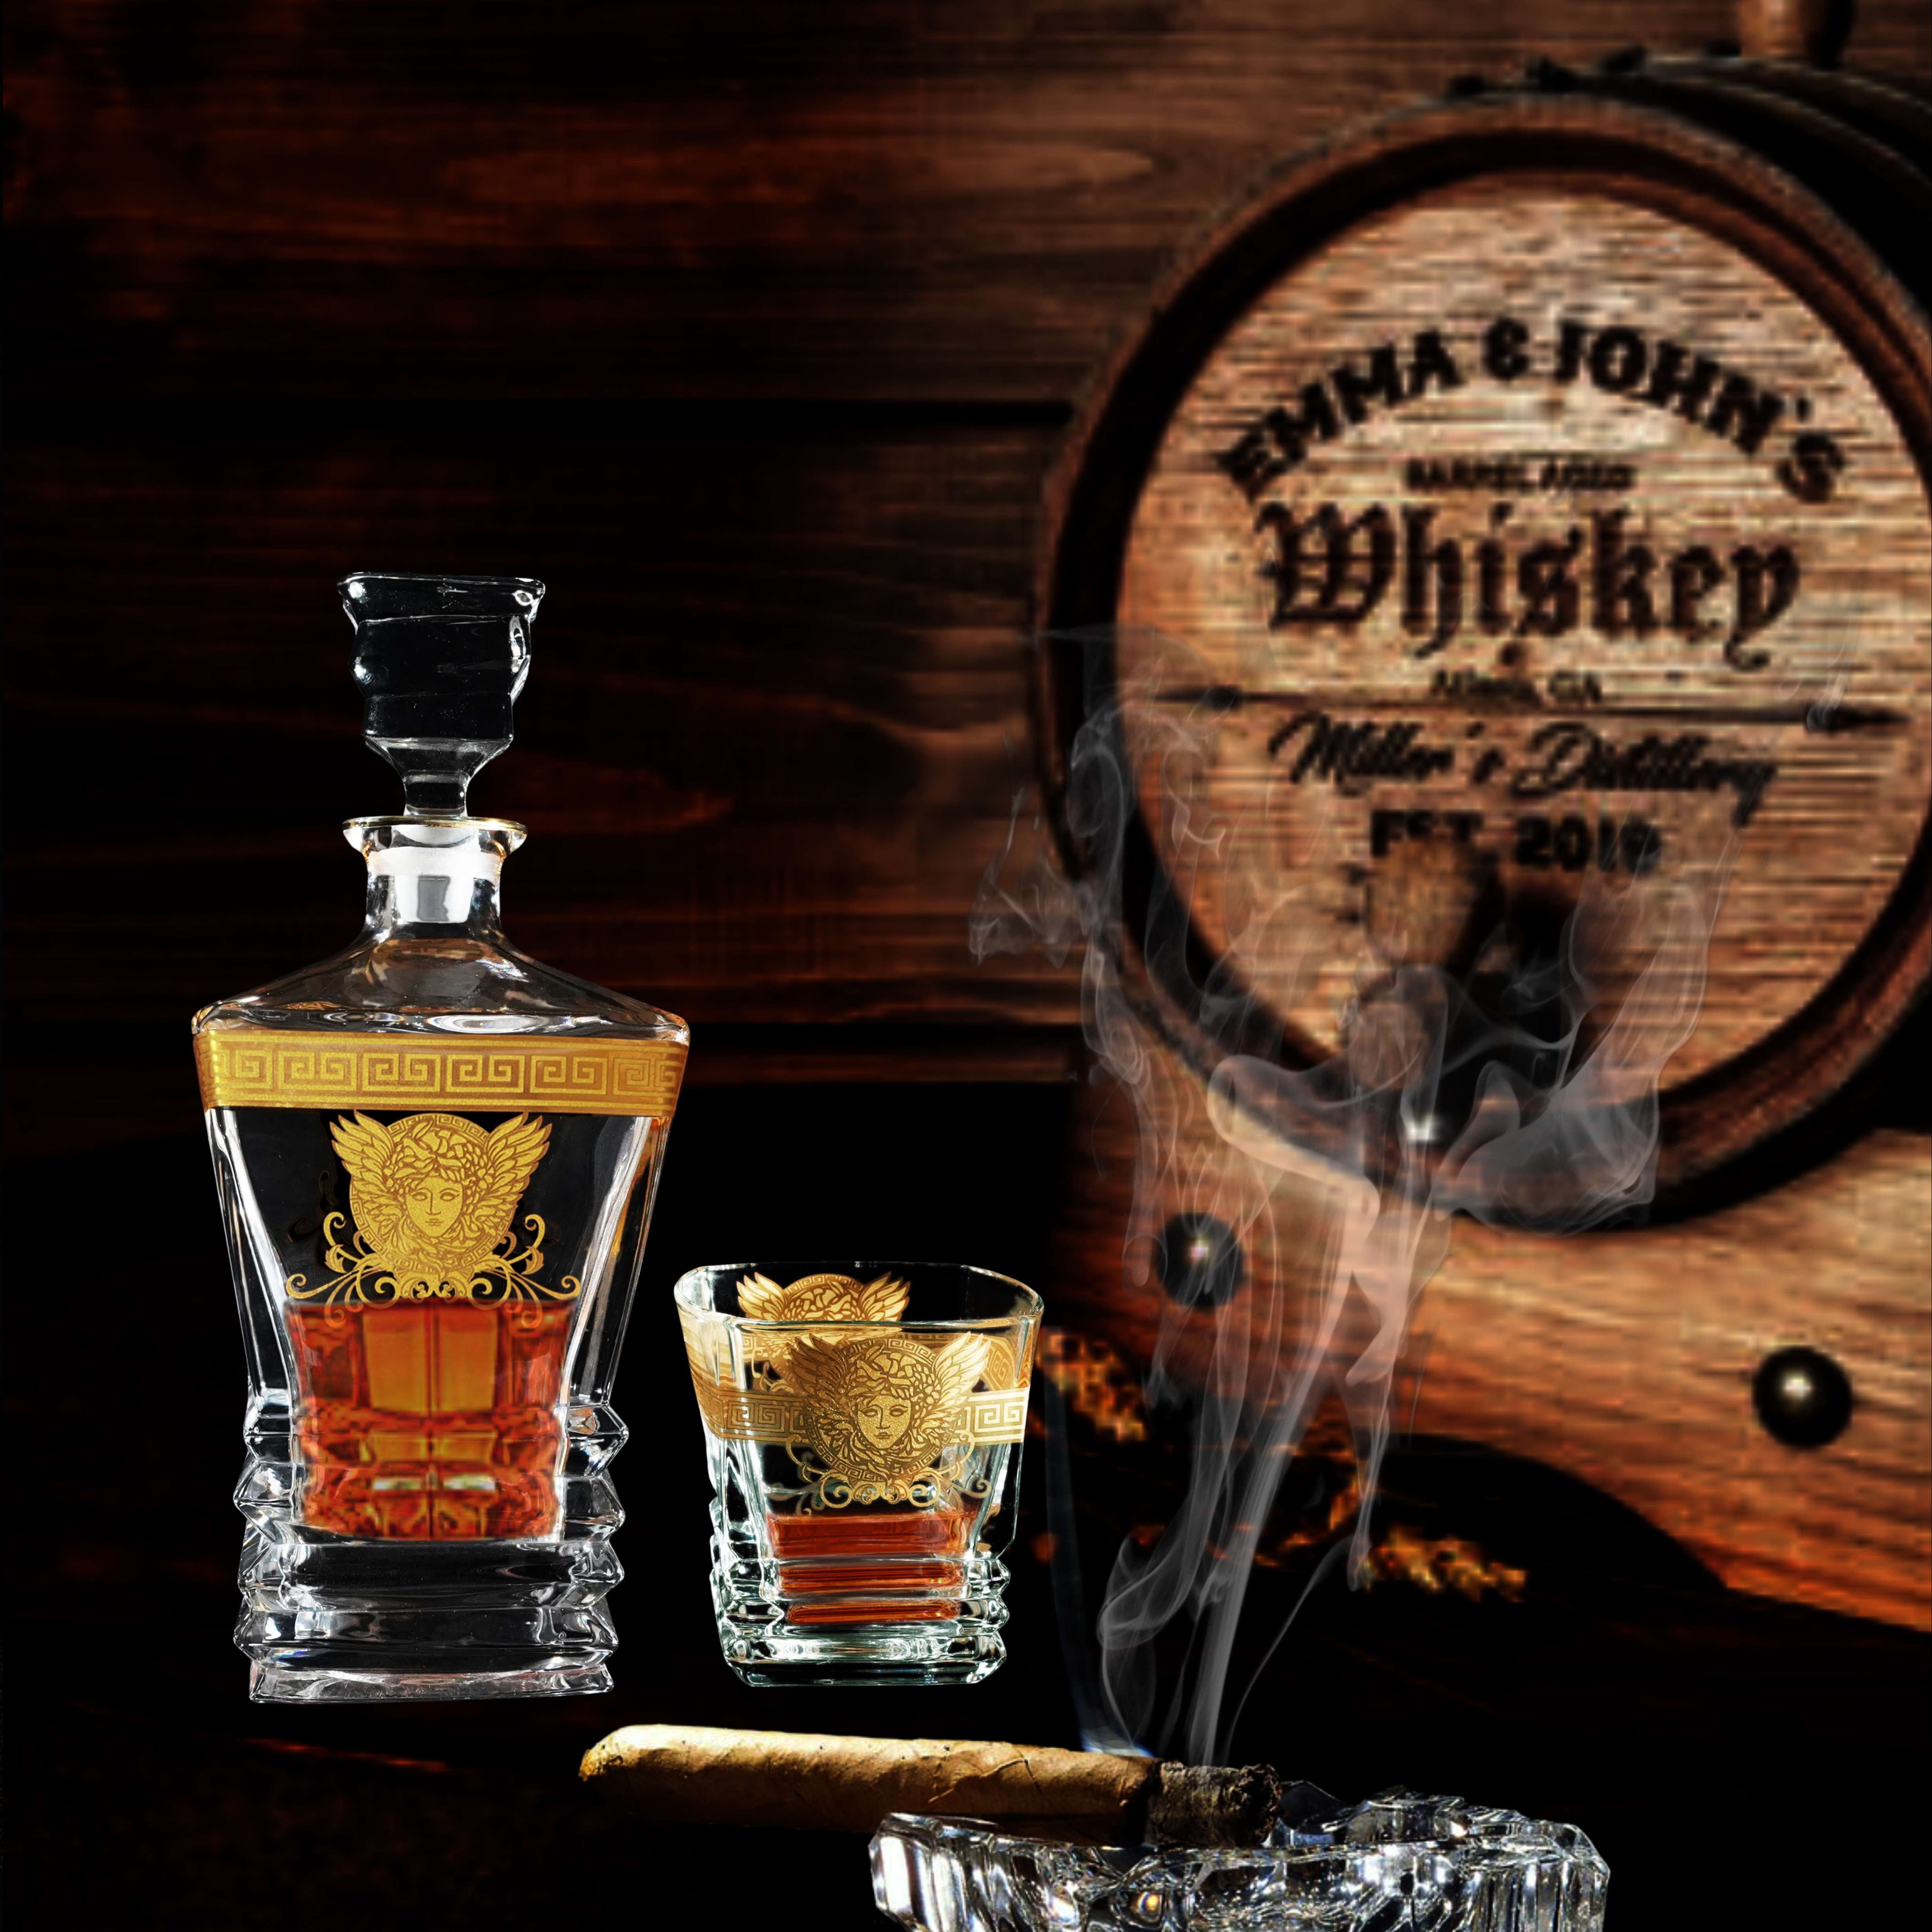 Bộ Bình Rượu Versace Whisky Pha Lê Kiểu Pháp-Họa Tiết Dát Nổi Vàng Hình Mặt Chiến Binh Versace  BRV 0109